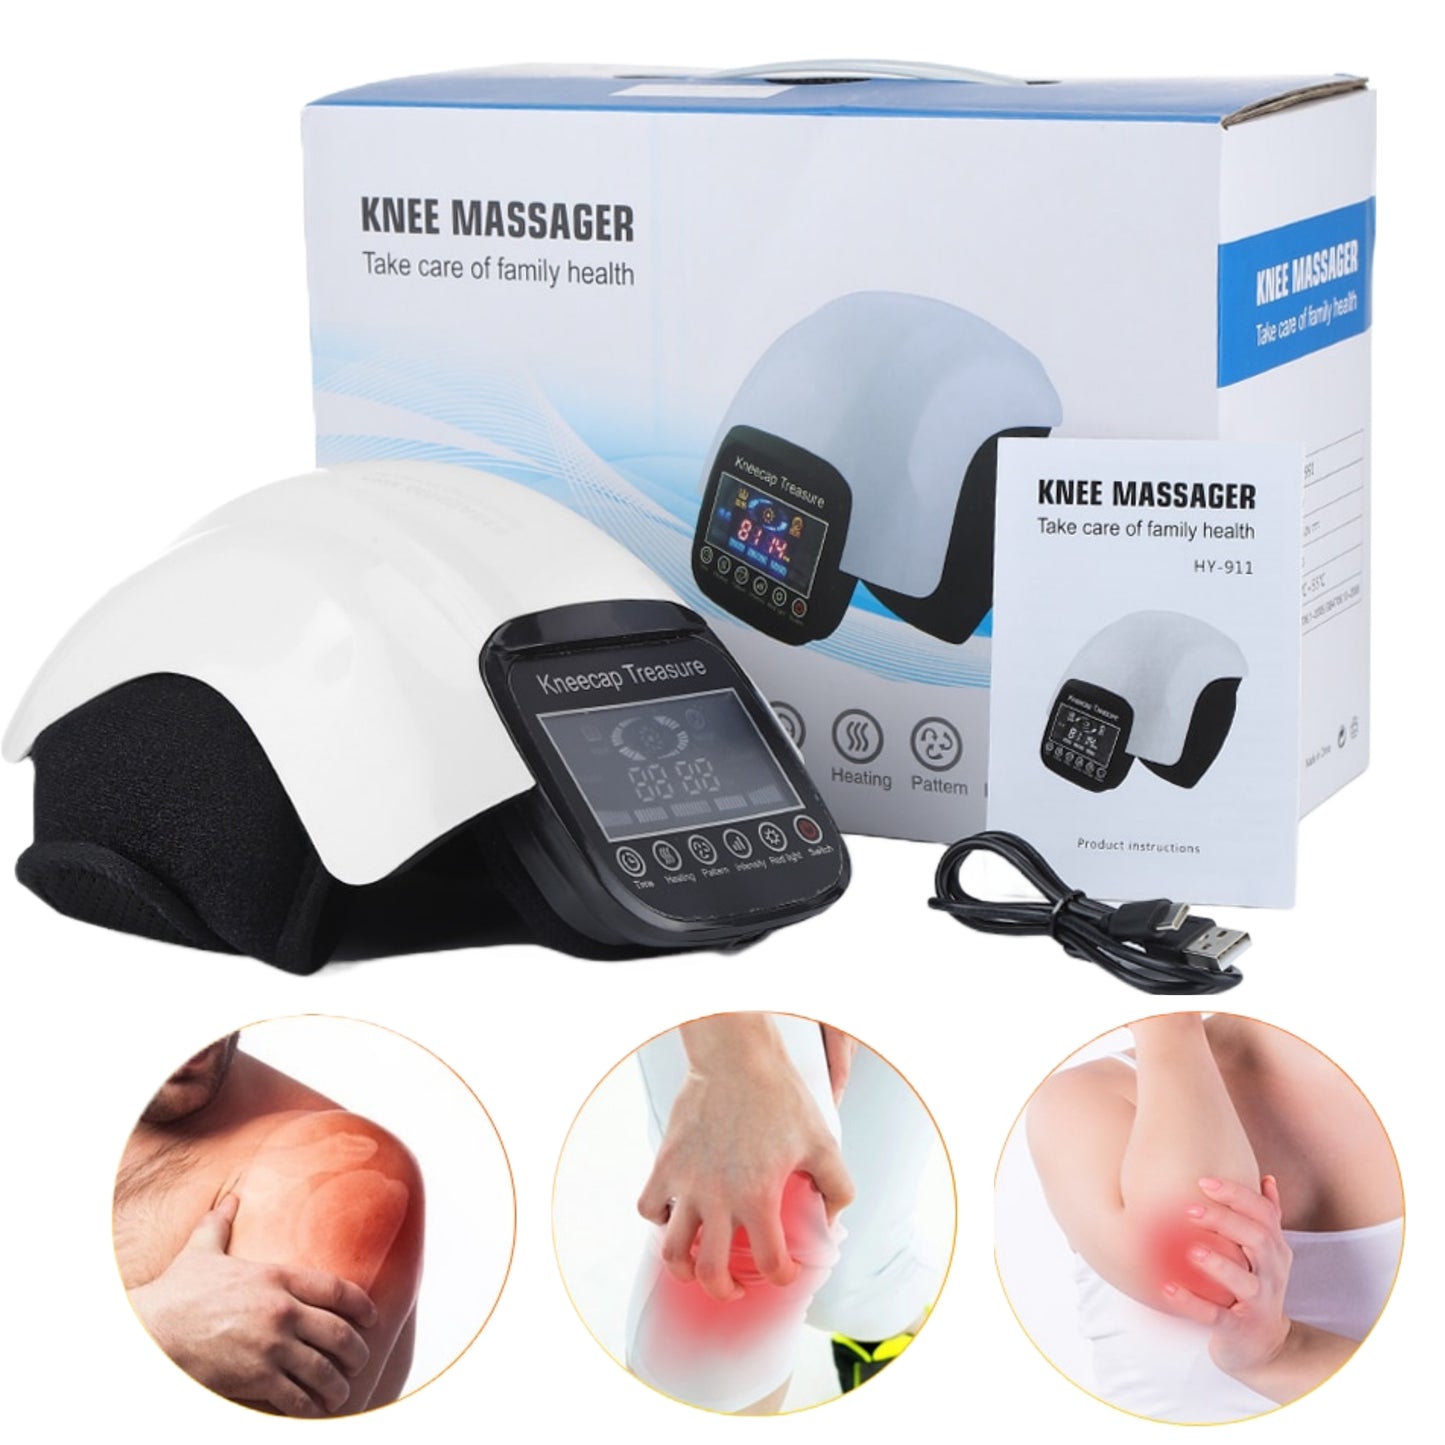 knee massager - shoulder massager - heat massager